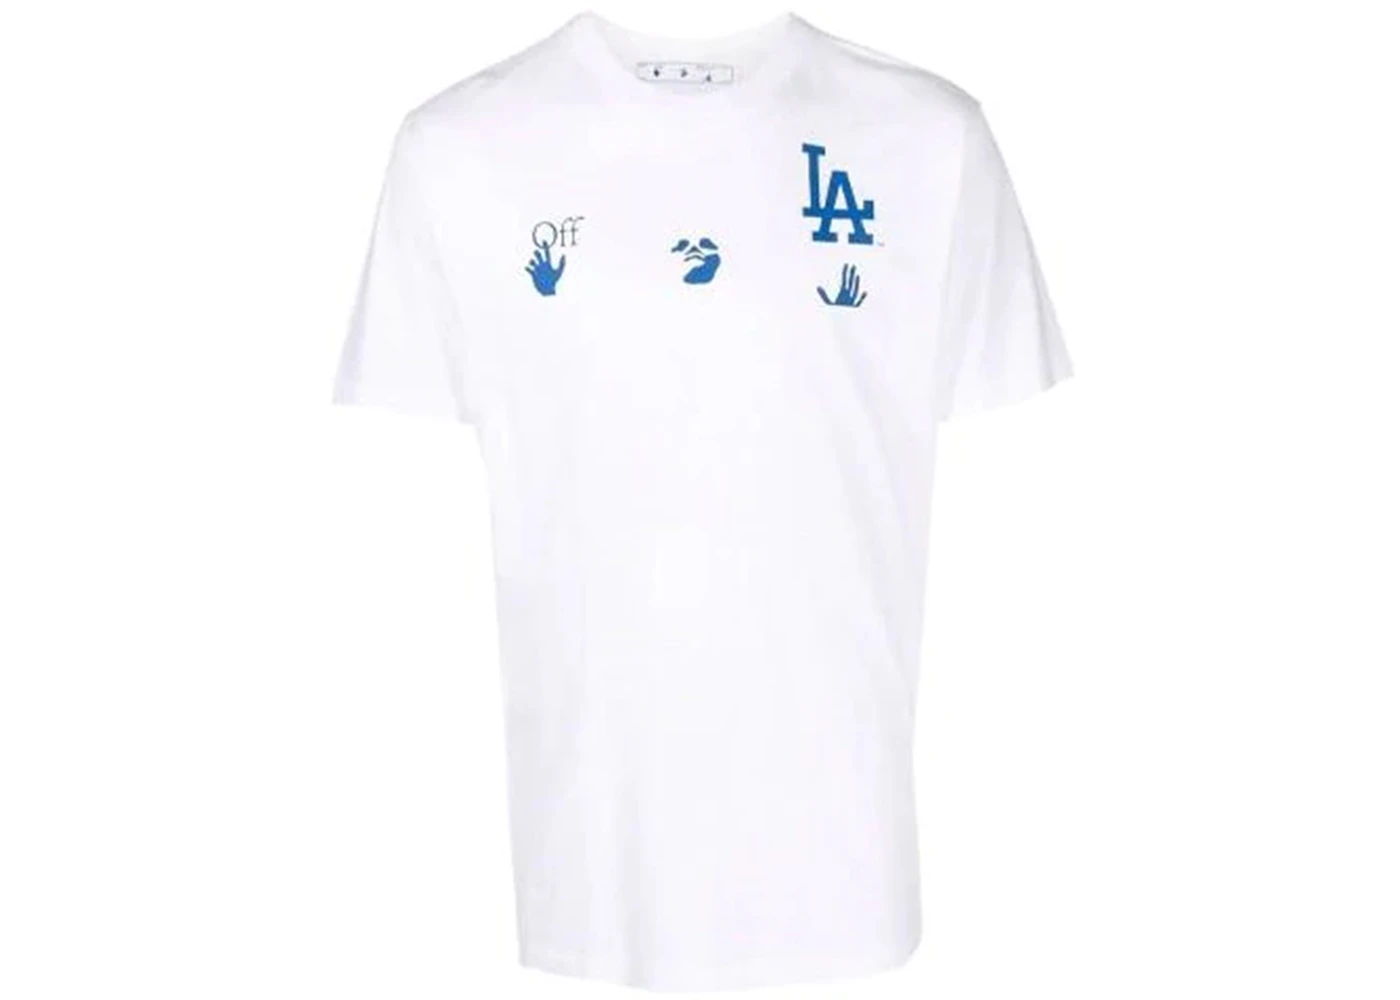 baseball dodgers shirt